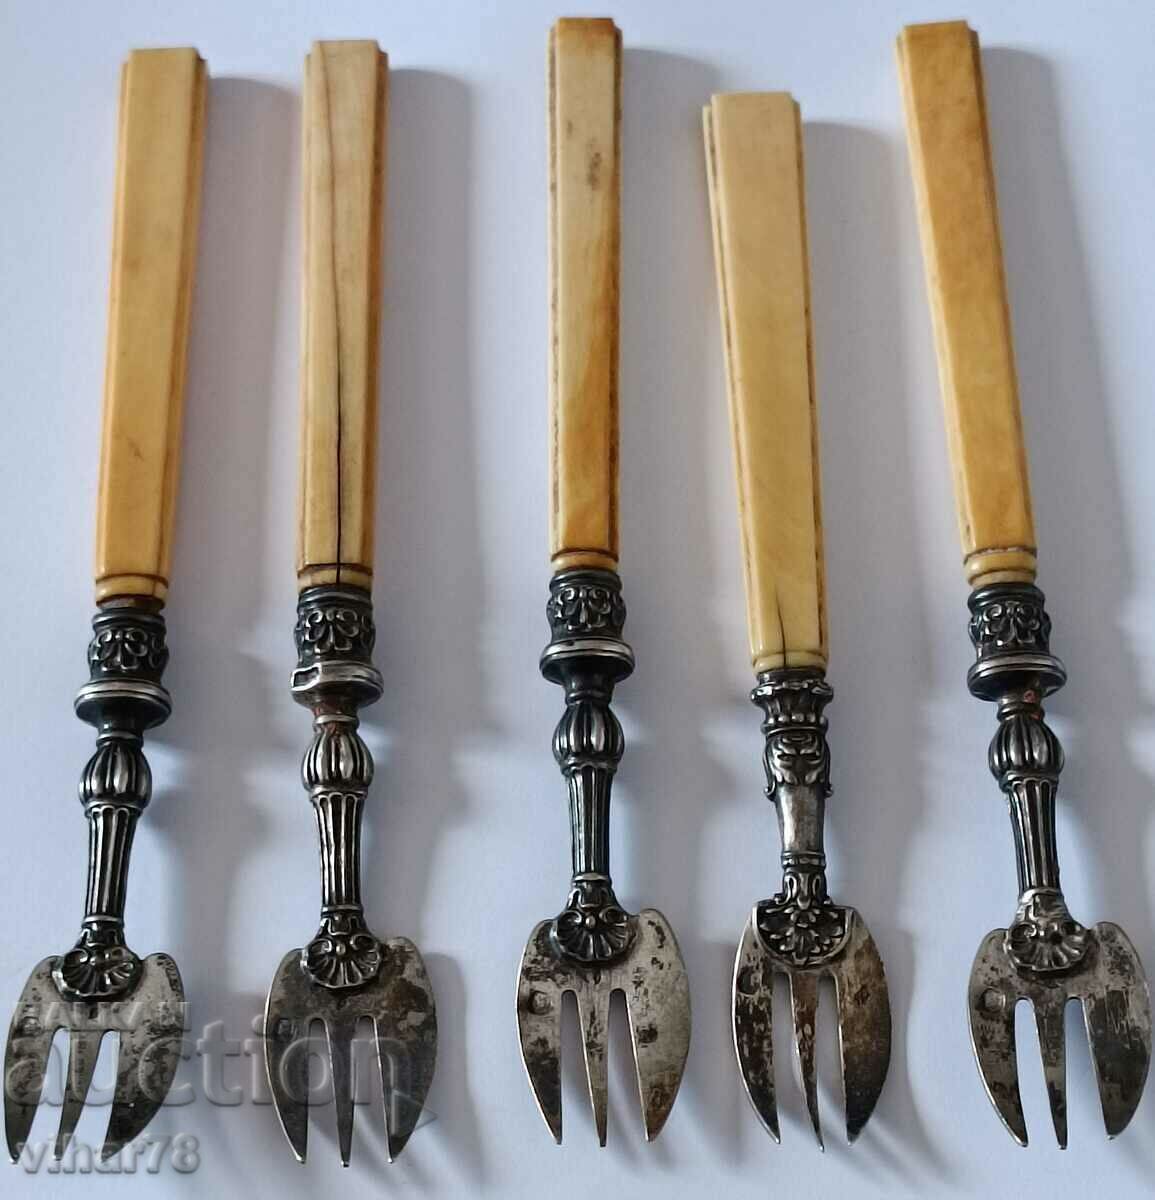 old silver forks